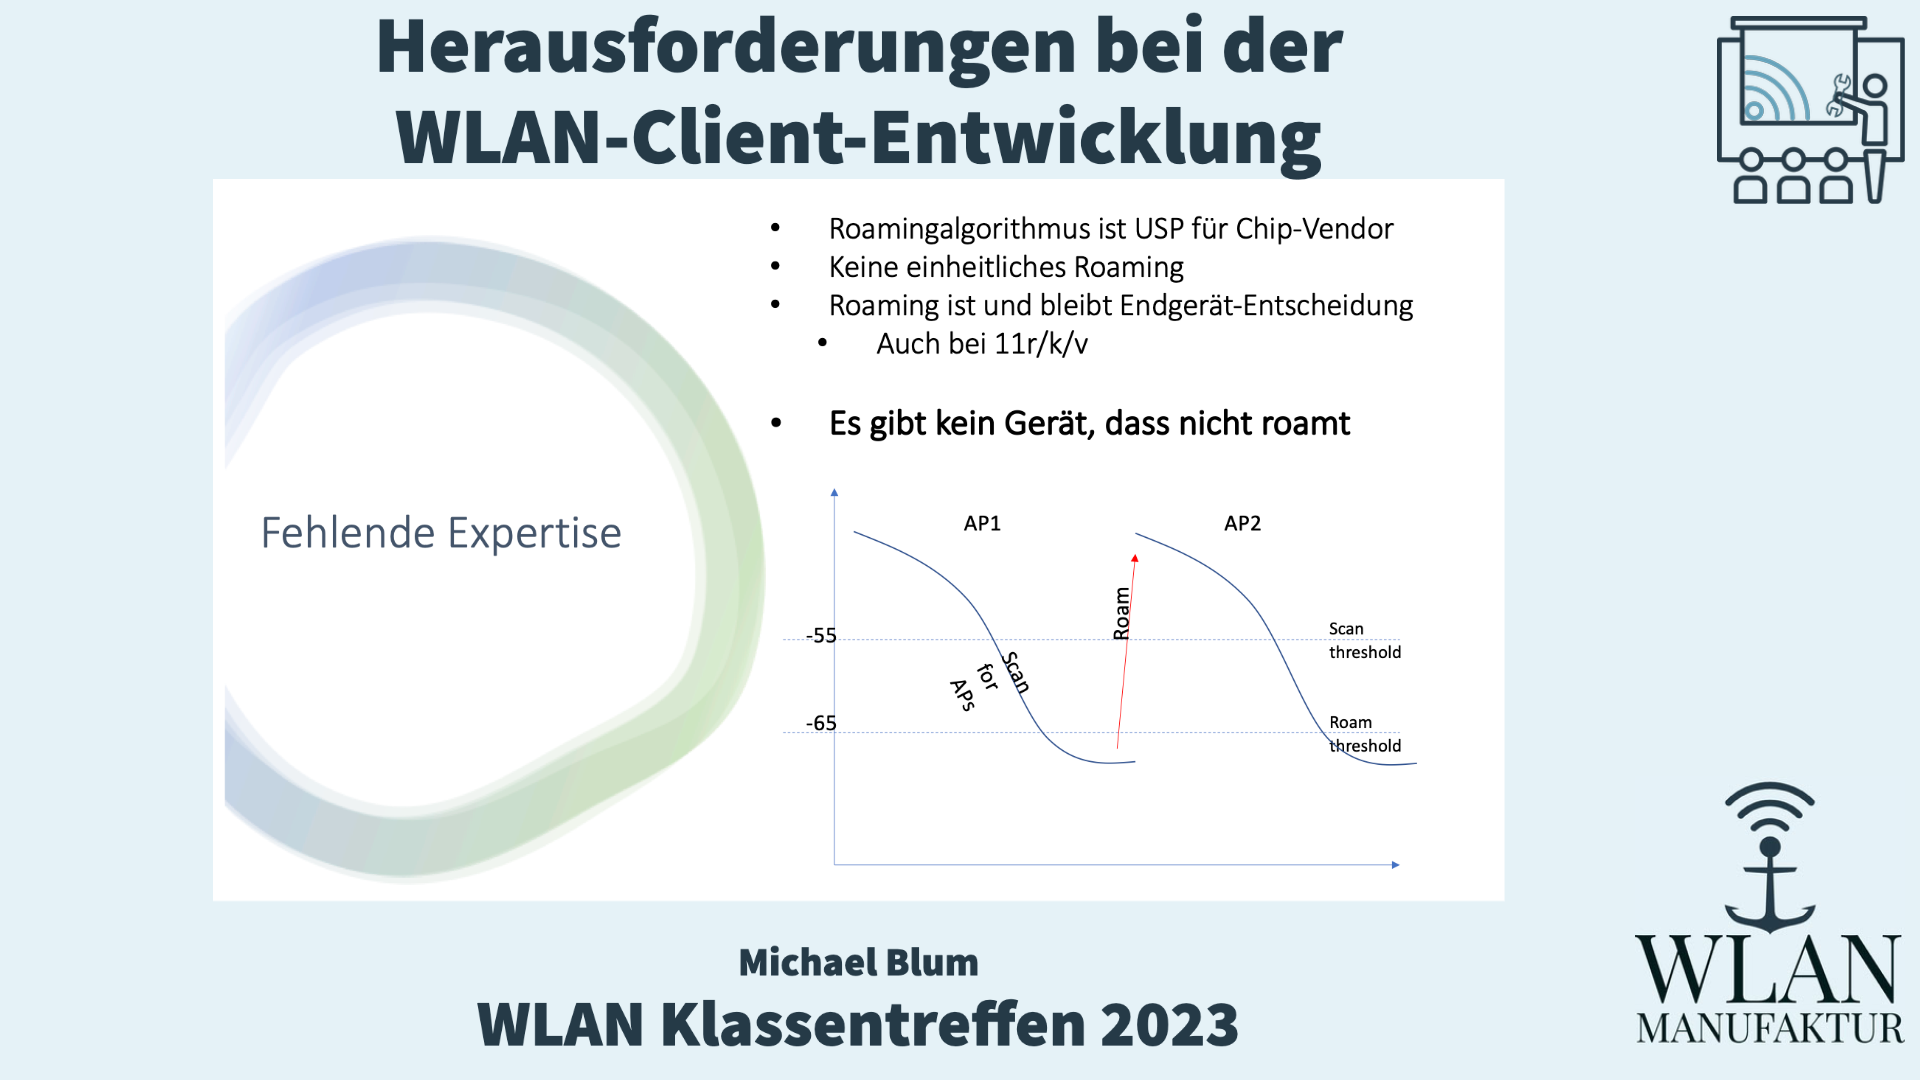 Load video: Aufzeichnung der Präsentation vom WLAN Klassentreffen - Herausforderungen bei der WLAN-Client-Entwicklung